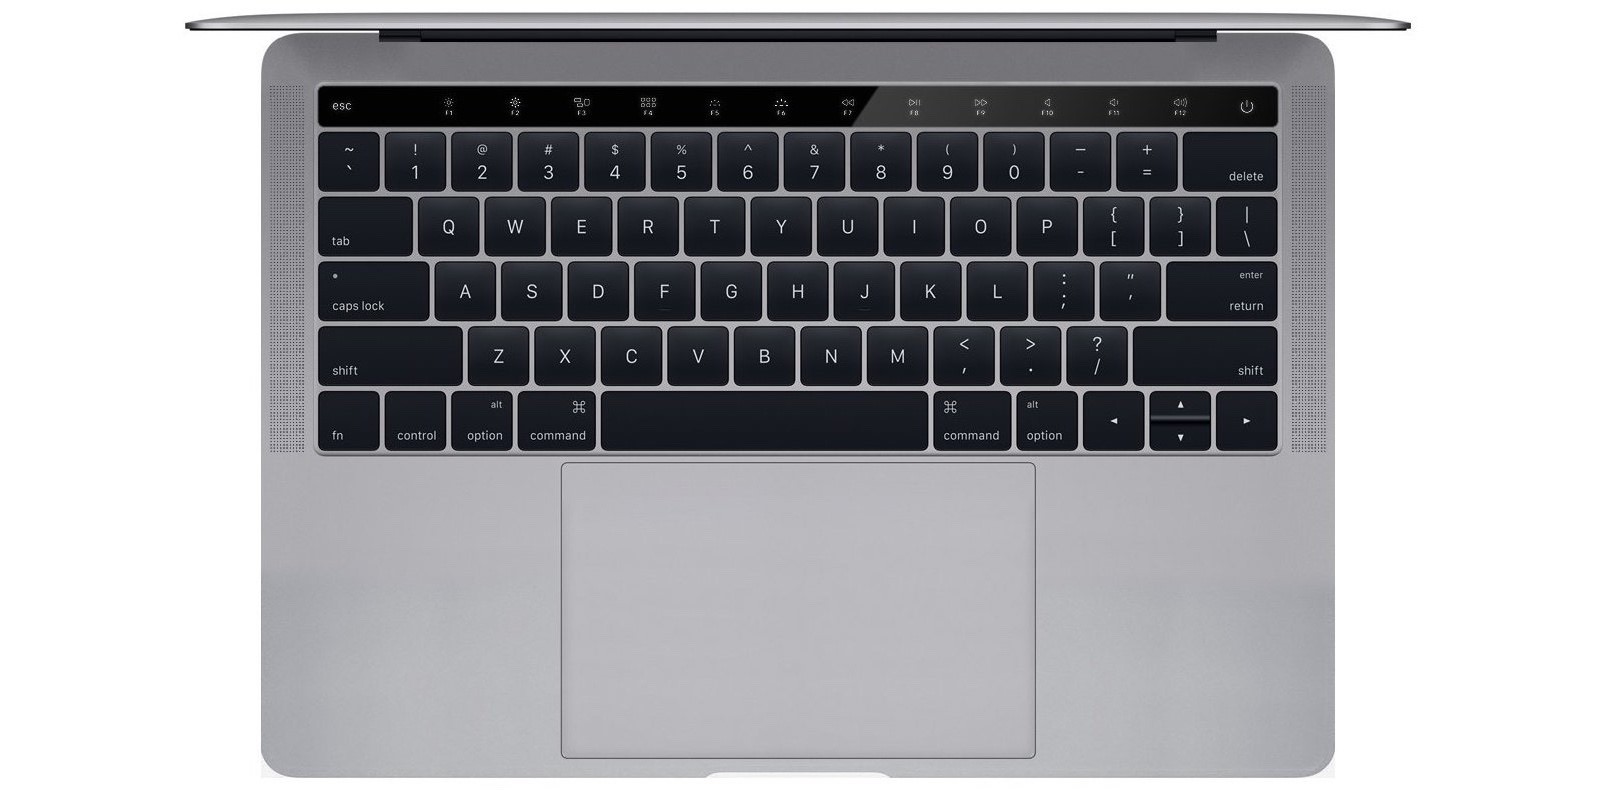 Modifica del design del MacBook Pro